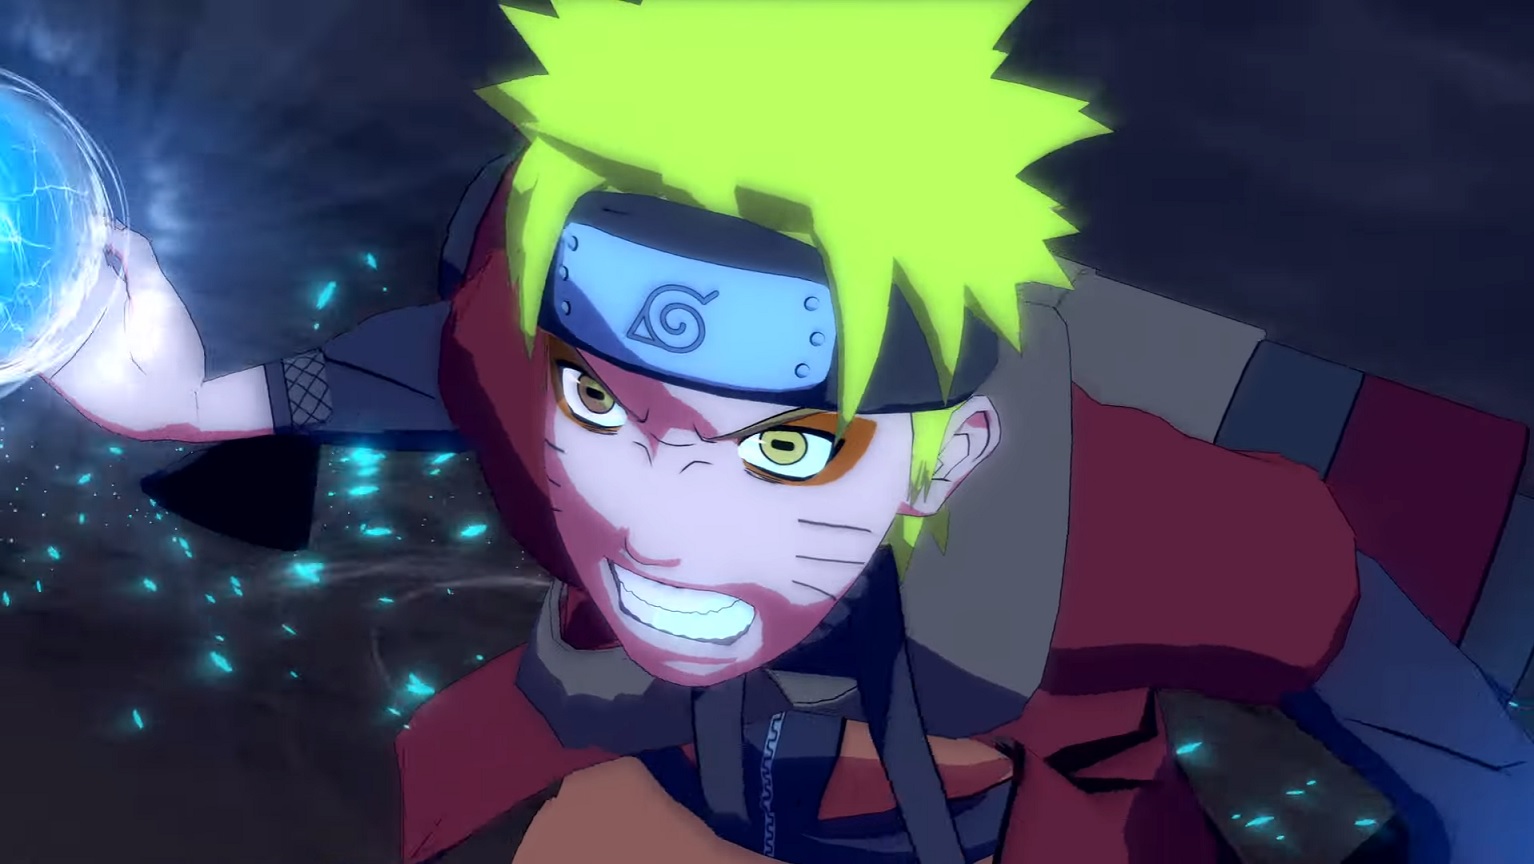 Anime de Naruto Shippuden vai acabar nesta quinta-feira (23)